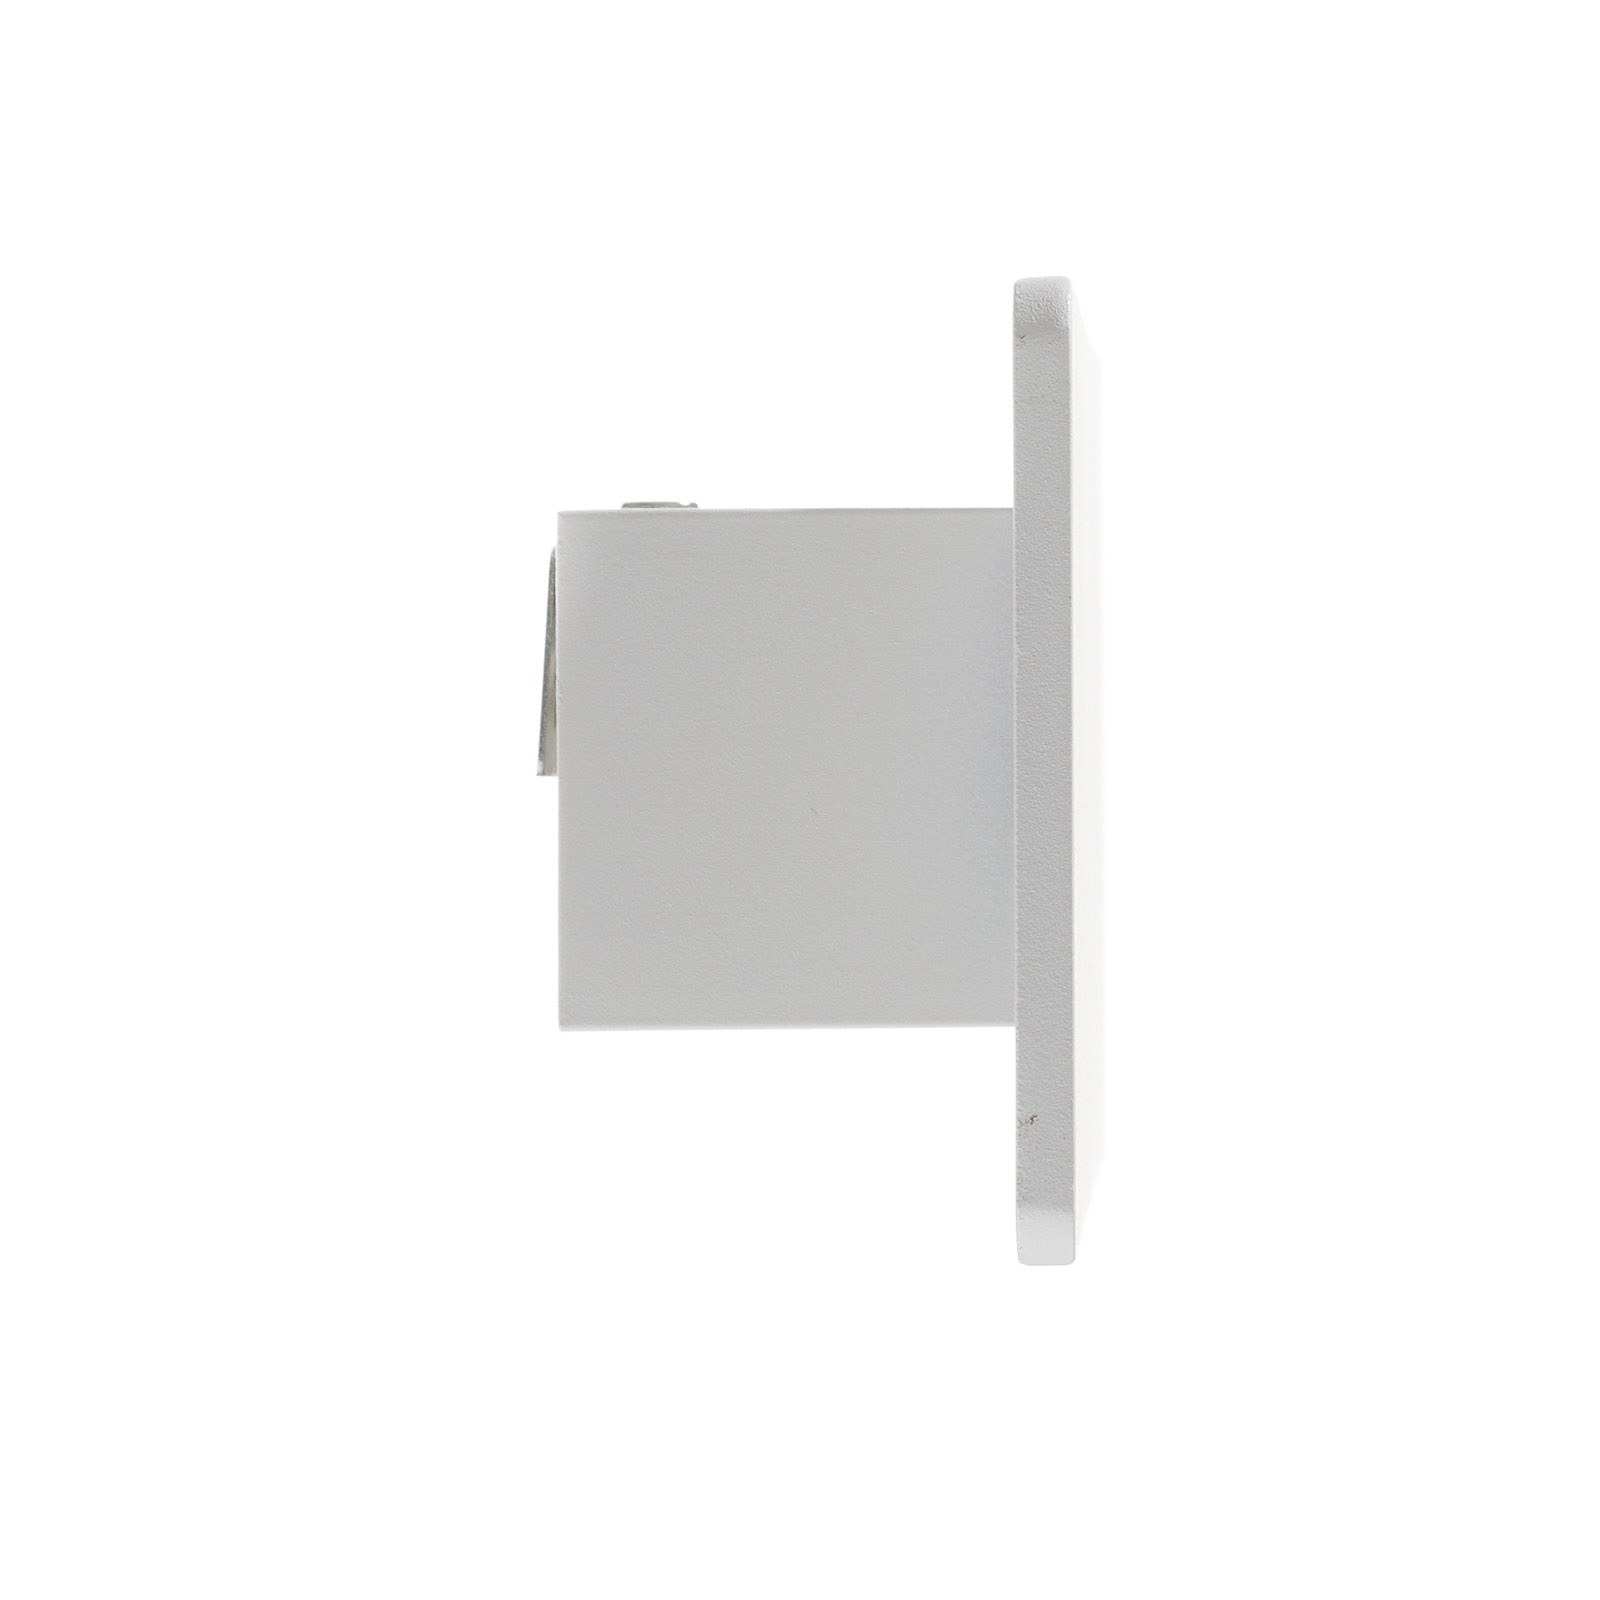 LED-Wandleuchte Zig Zag weiß, Breite 29 cm